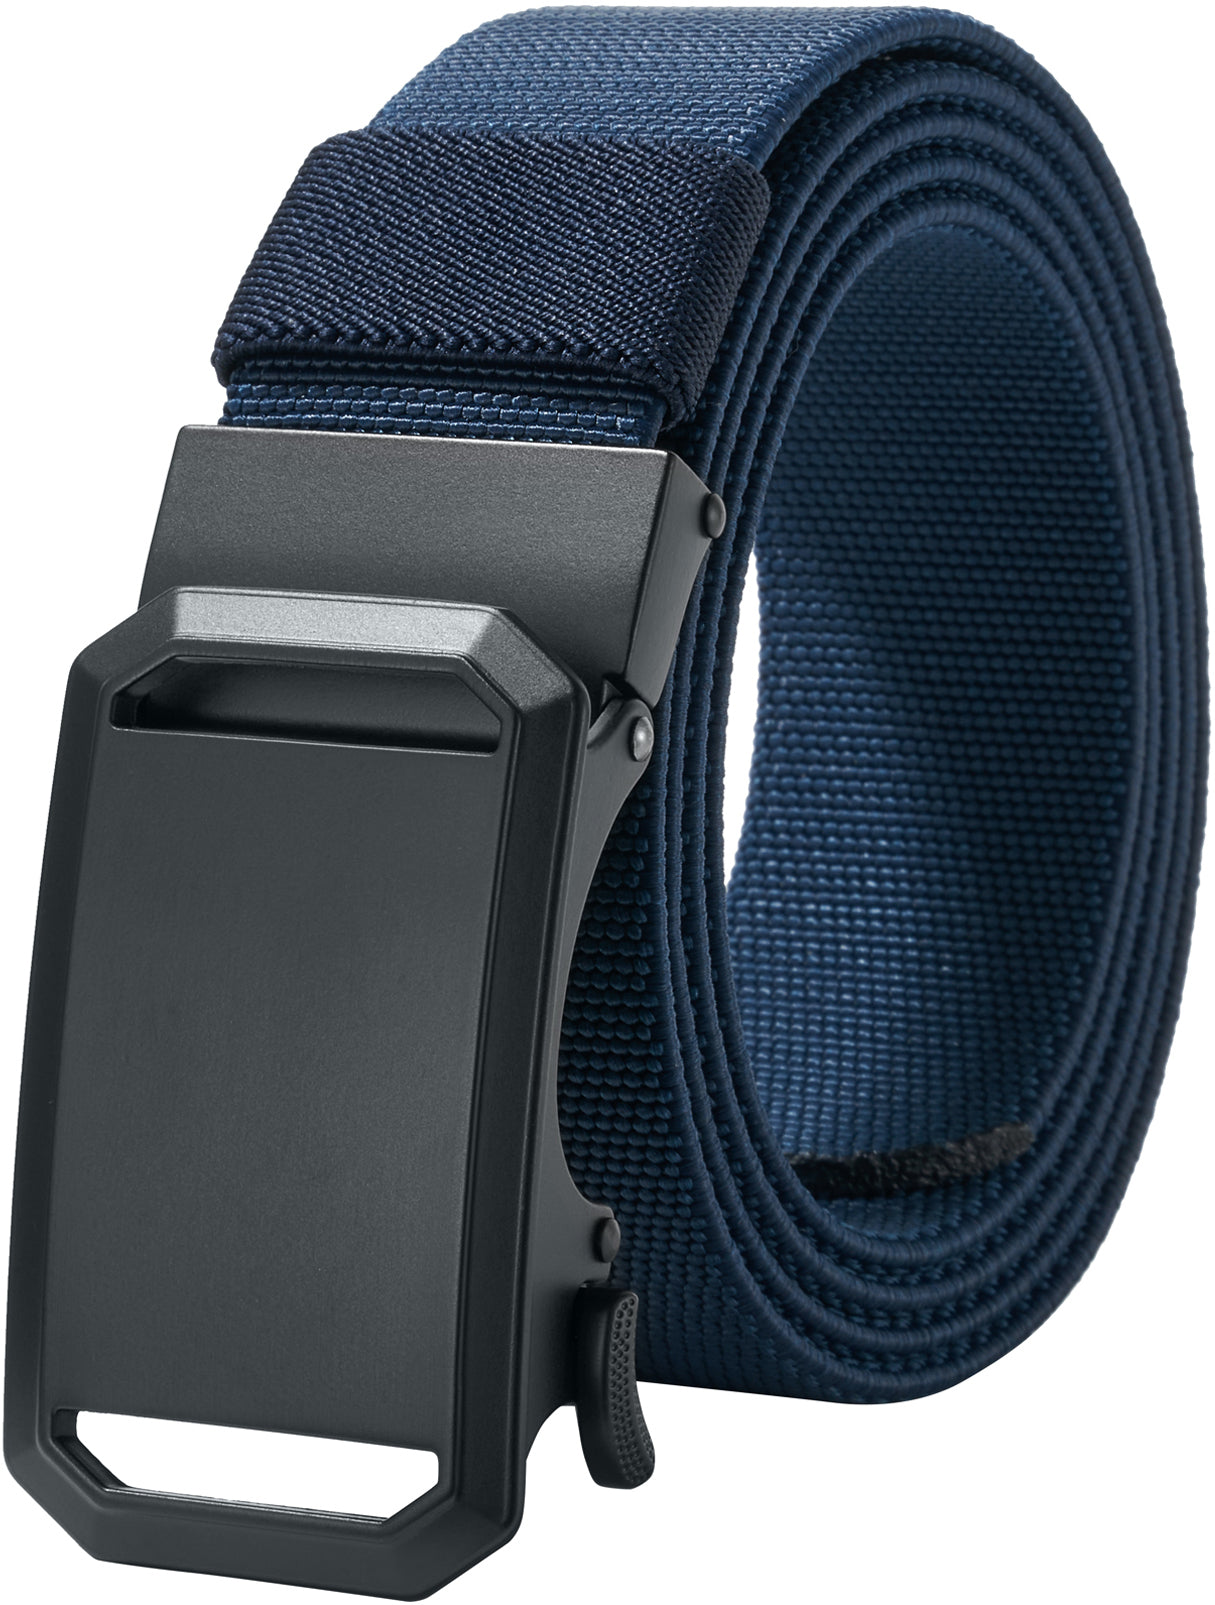 LionVII Ratchet Elastic Stretch Belts, 1 3/8" Slide Belt for Men with Automatic Buckle for Men Dress, Adjustable Trim to Fit 27-46" Waist